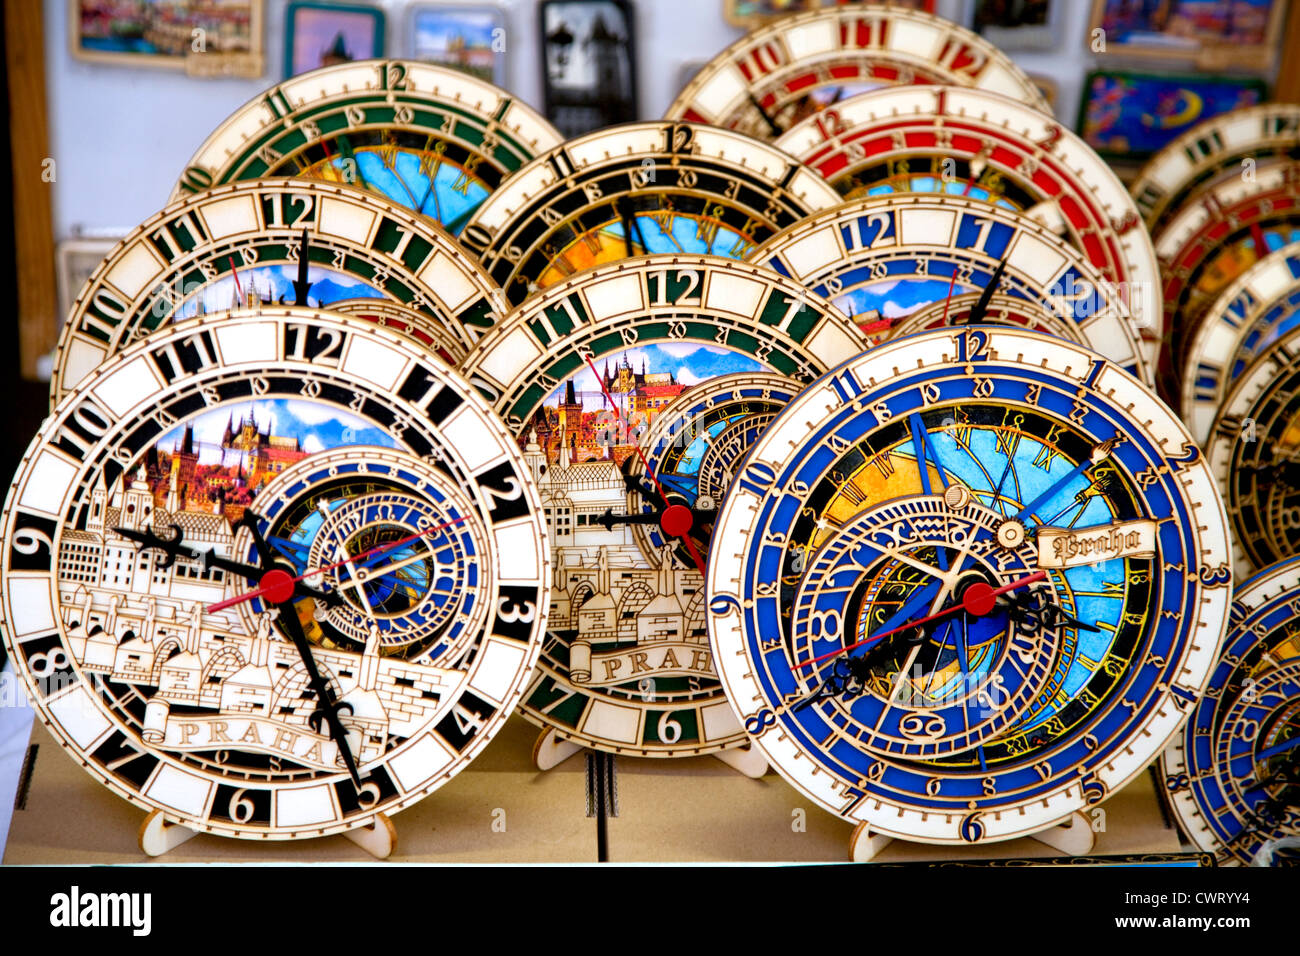 Miniaturen der berühmten Prager Orloj werden als Souvenirs in vielen Prager Altstadt Geschäften verkauft. Nur zur redaktionellen Verwendung. Stockfoto